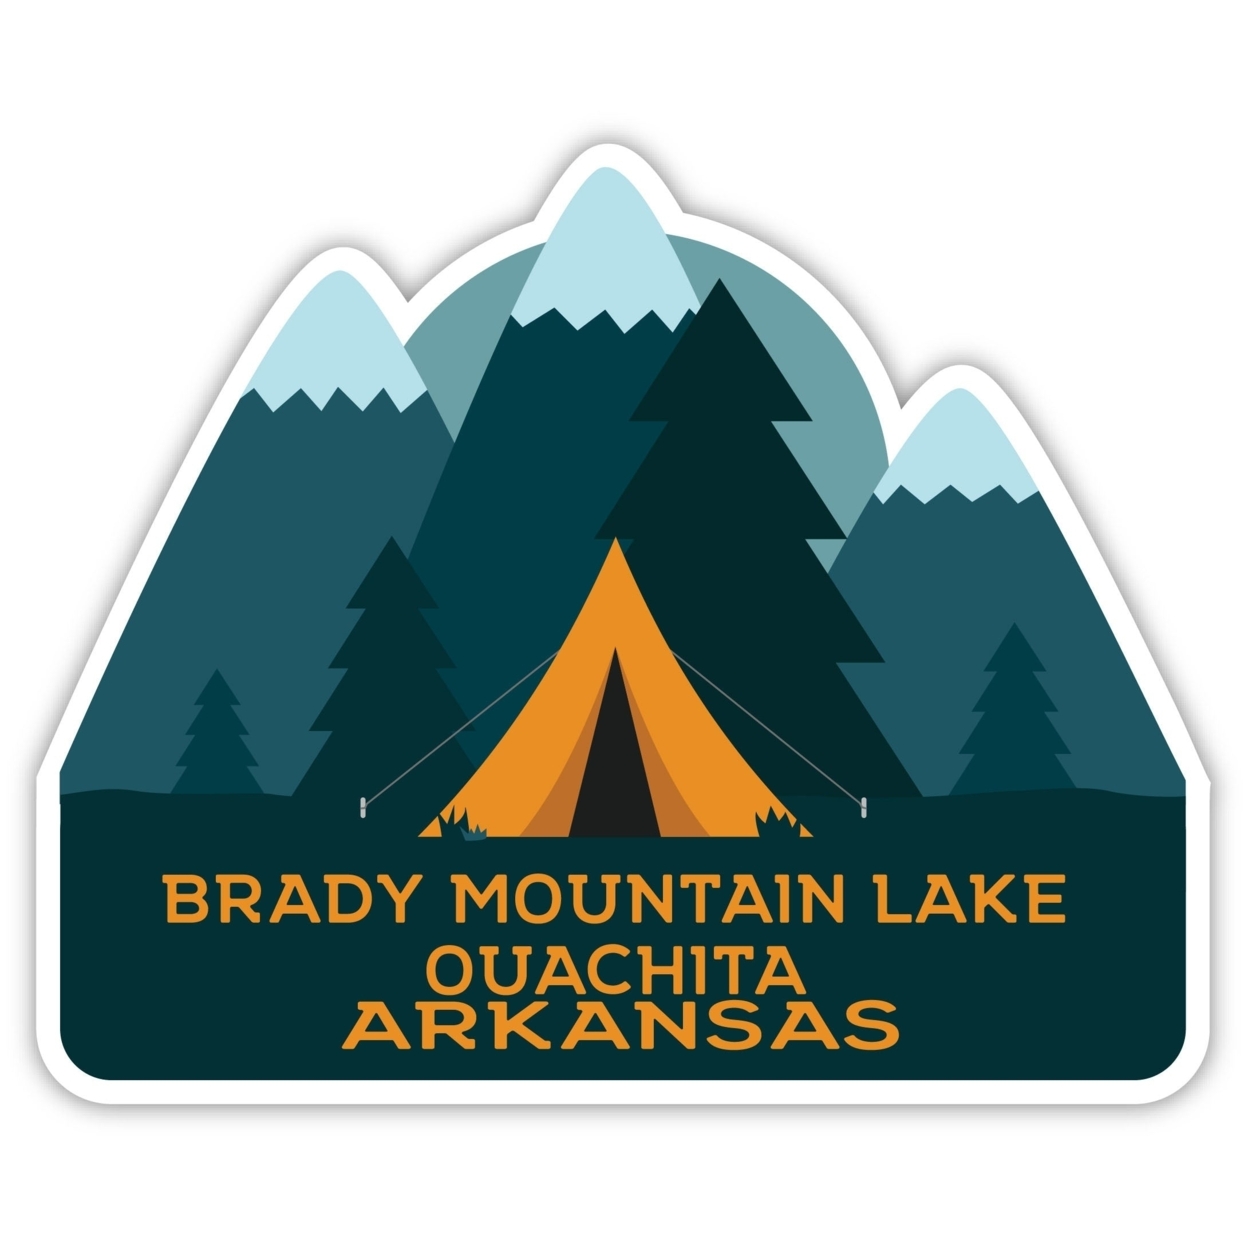 Brady Mountain Lake Ouachita Arkansas Souvenir Decorative Stickers (Choose Theme And Size) - Single Unit, 10-Inch, Tent